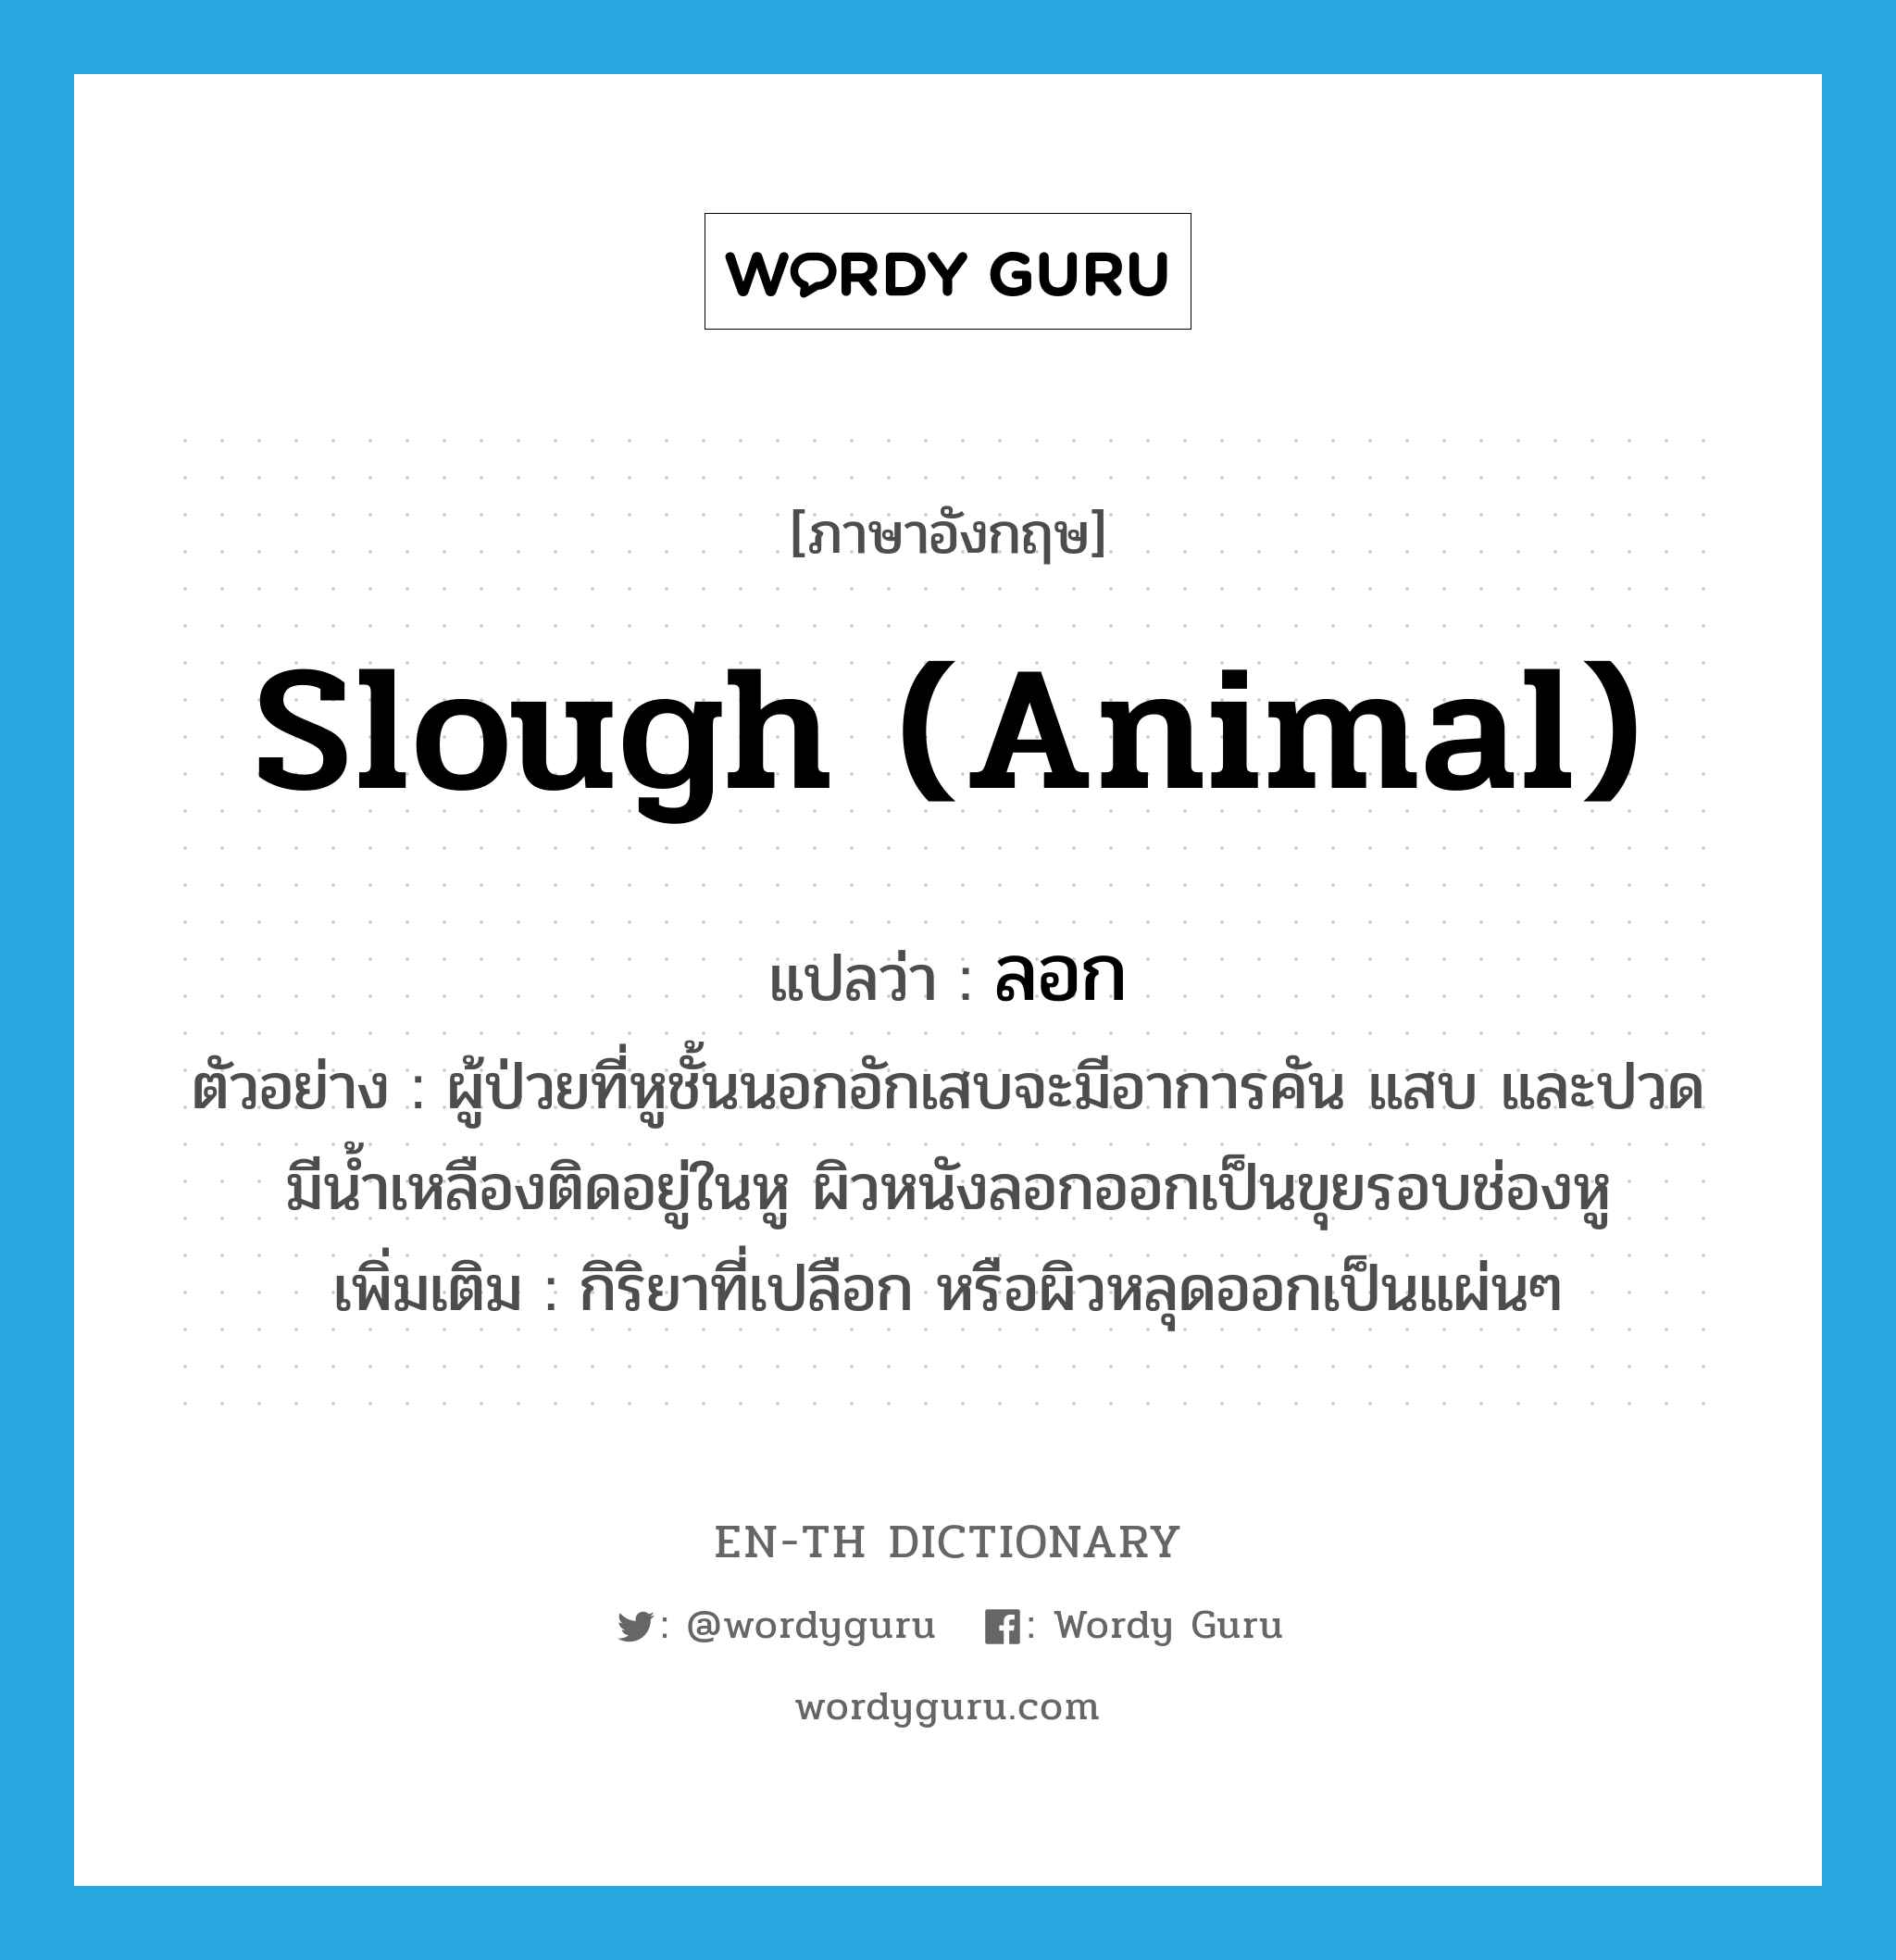 slough (animal) แปลว่า?, คำศัพท์ภาษาอังกฤษ slough (animal) แปลว่า ลอก ประเภท V ตัวอย่าง ผู้ป่วยที่หูชั้นนอกอักเสบจะมีอาการคัน แสบ และปวด มีน้ำเหลืองติดอยู่ในหู ผิวหนังลอกออกเป็นขุยรอบช่องหู เพิ่มเติม กิริยาที่เปลือก หรือผิวหลุดออกเป็นแผ่นๆ หมวด V